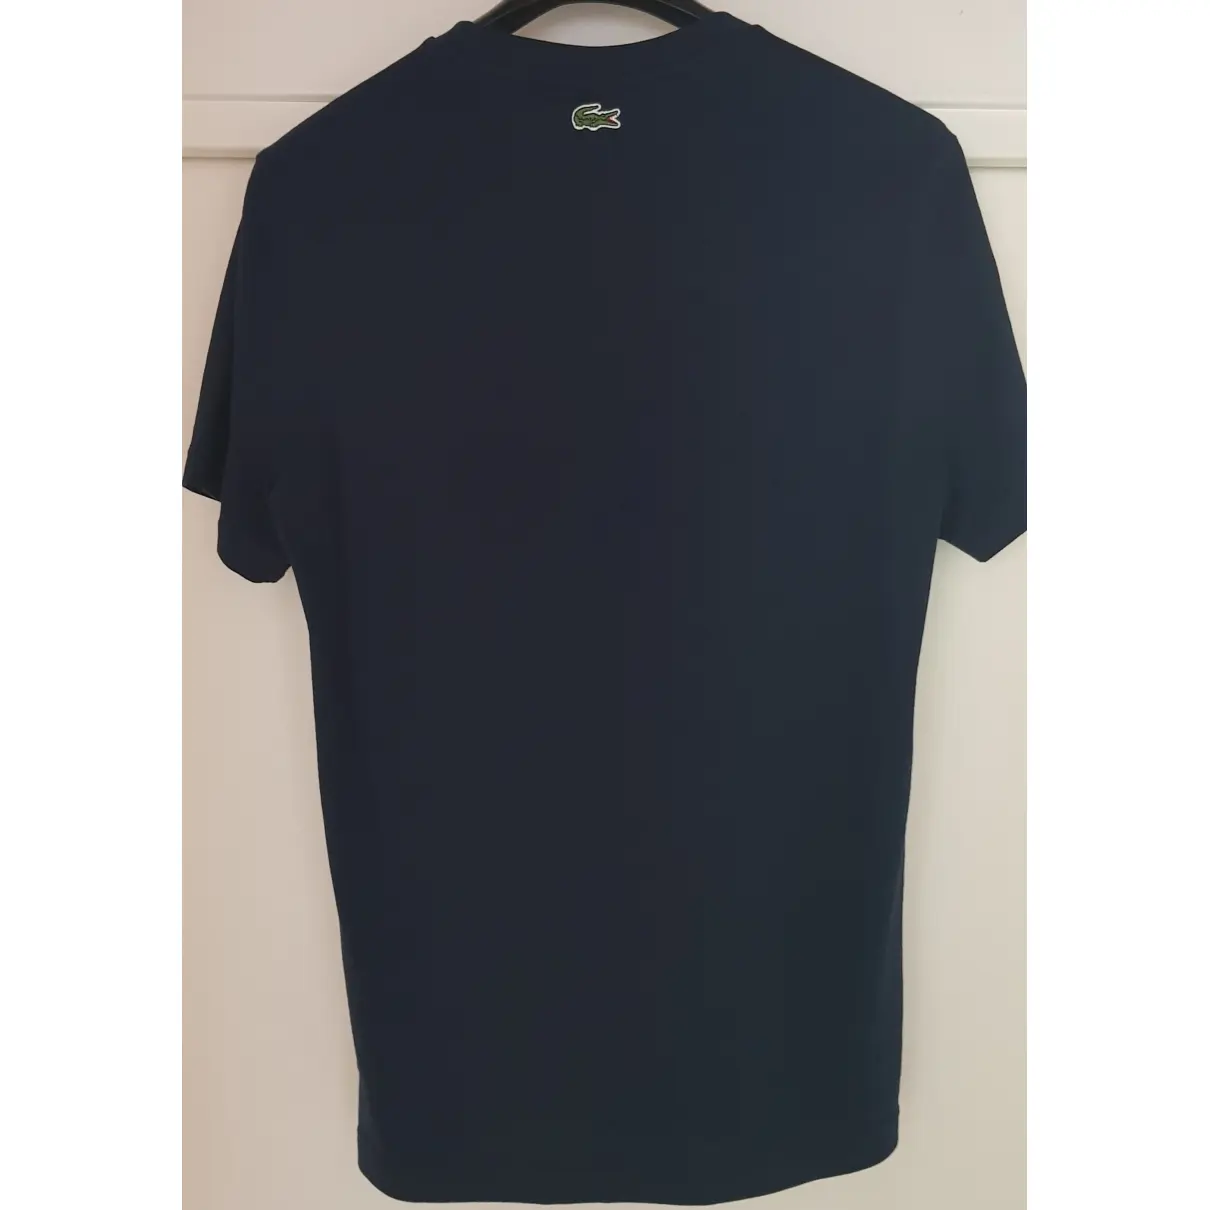 Buy Lacoste Blue Cotton T-shirt online